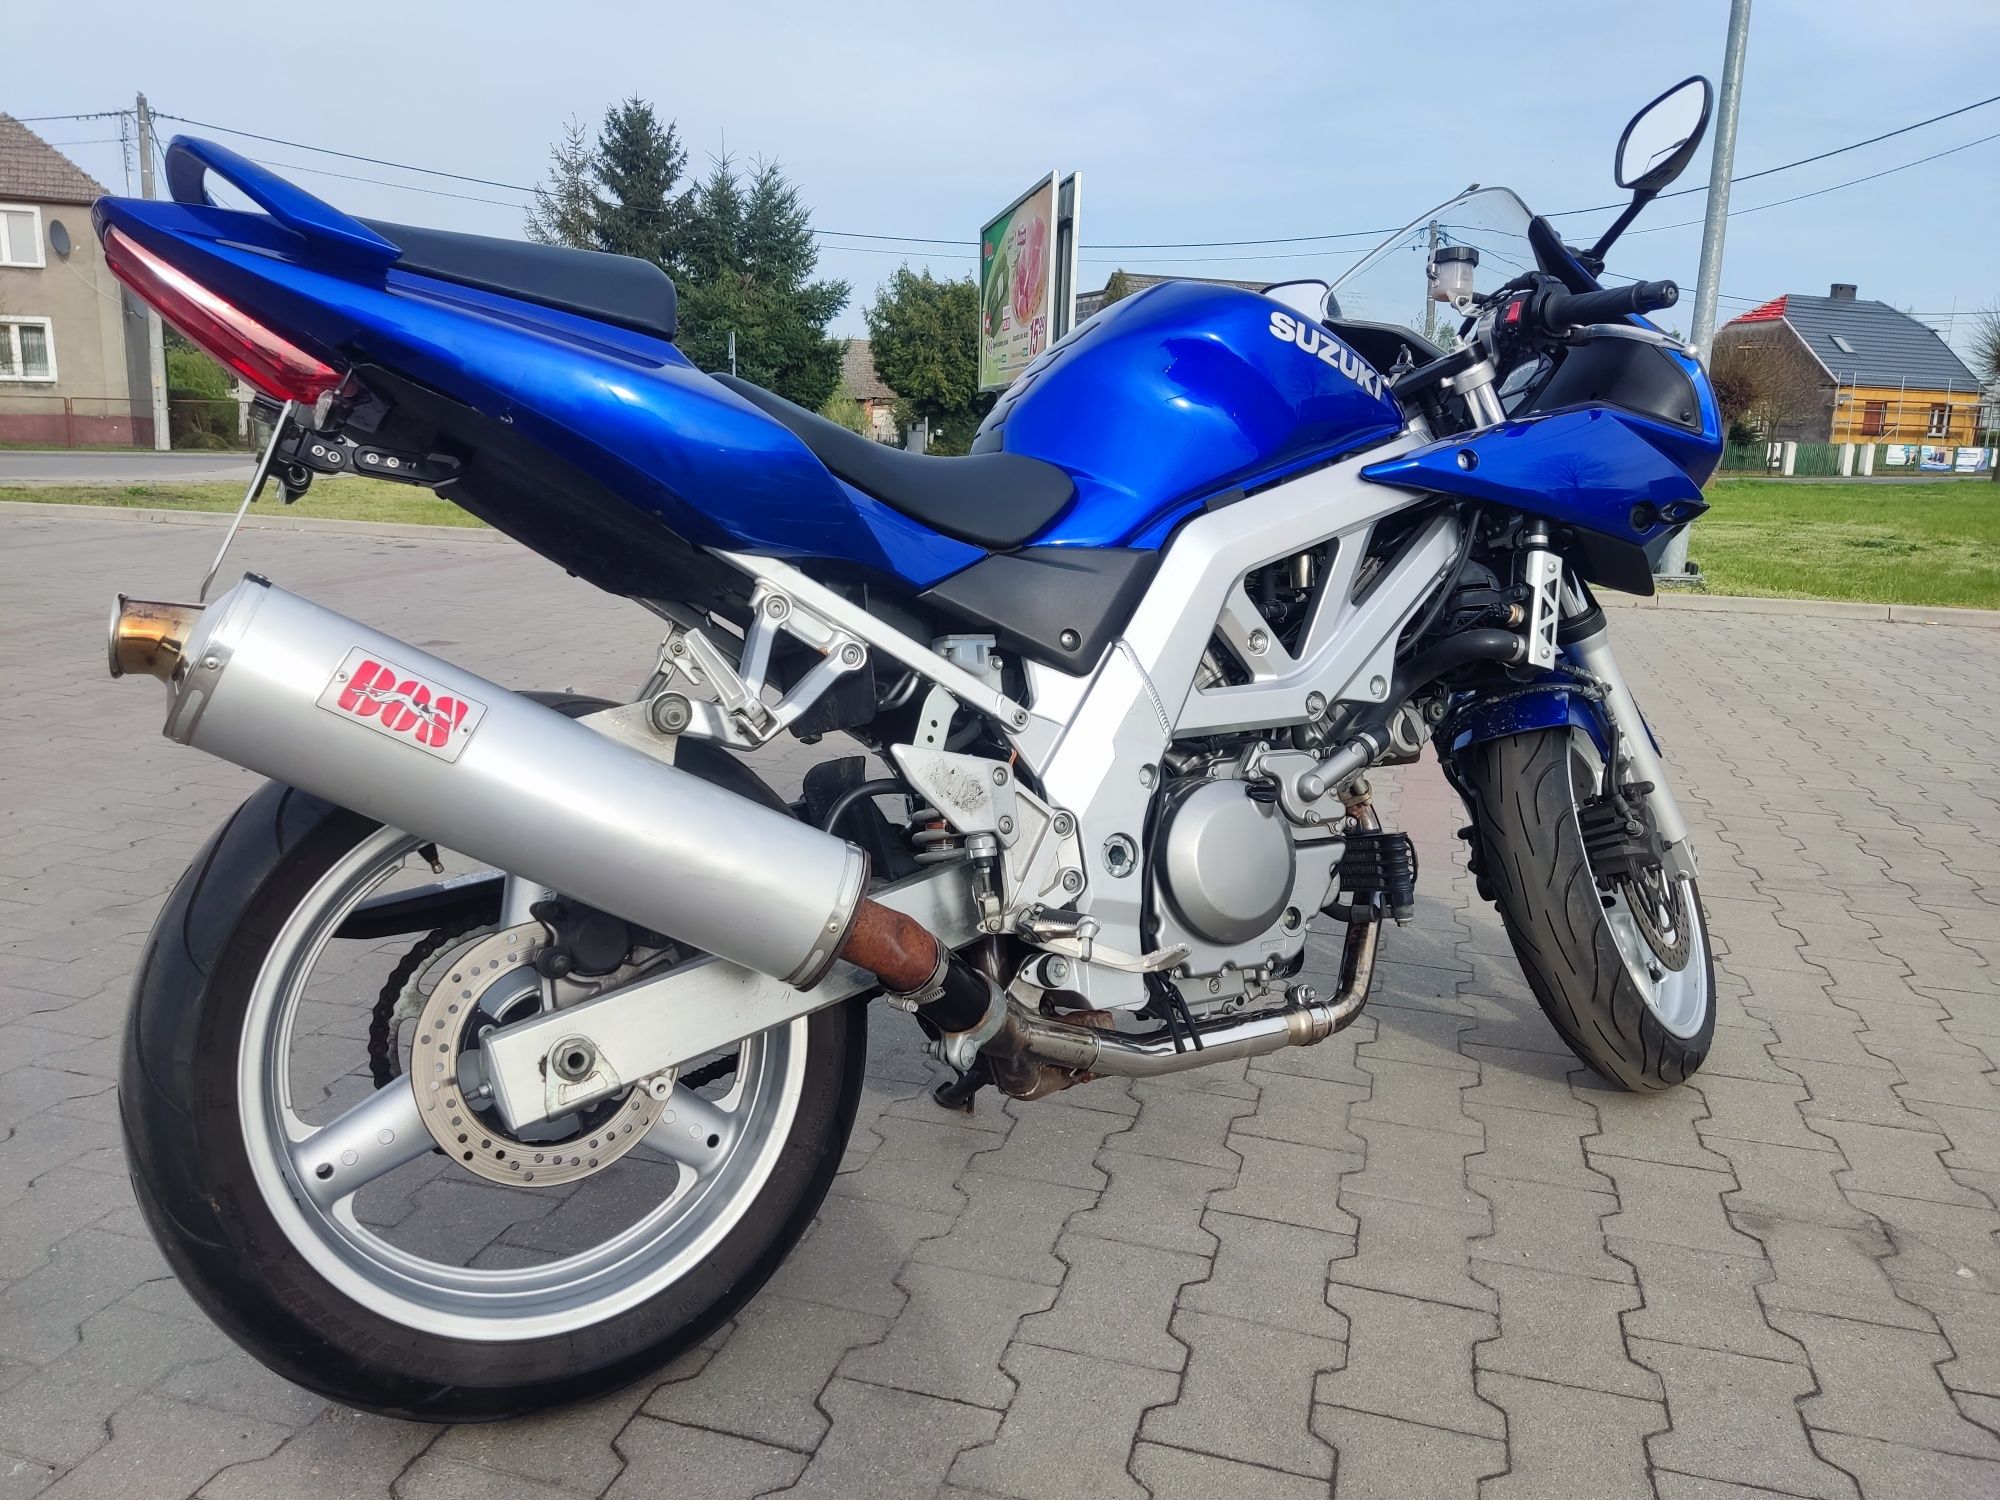 Motocykl Suzuki sv650, 2003rok, zadbany, zarejestrowany